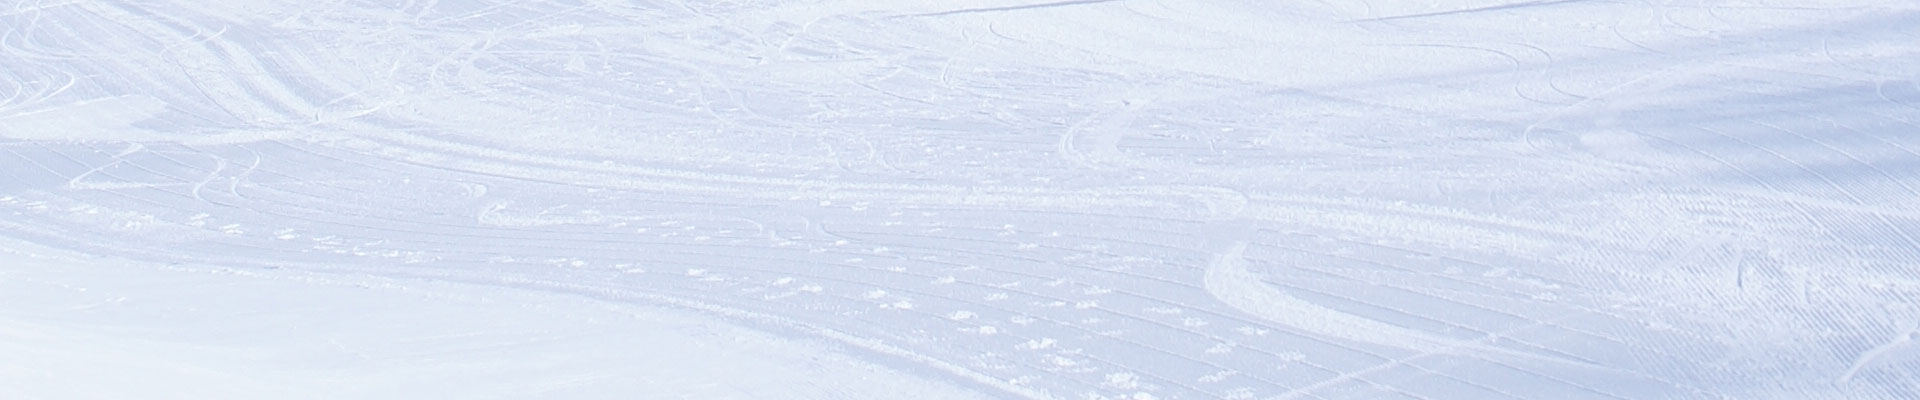 美林谷滑雪场供热项目建设